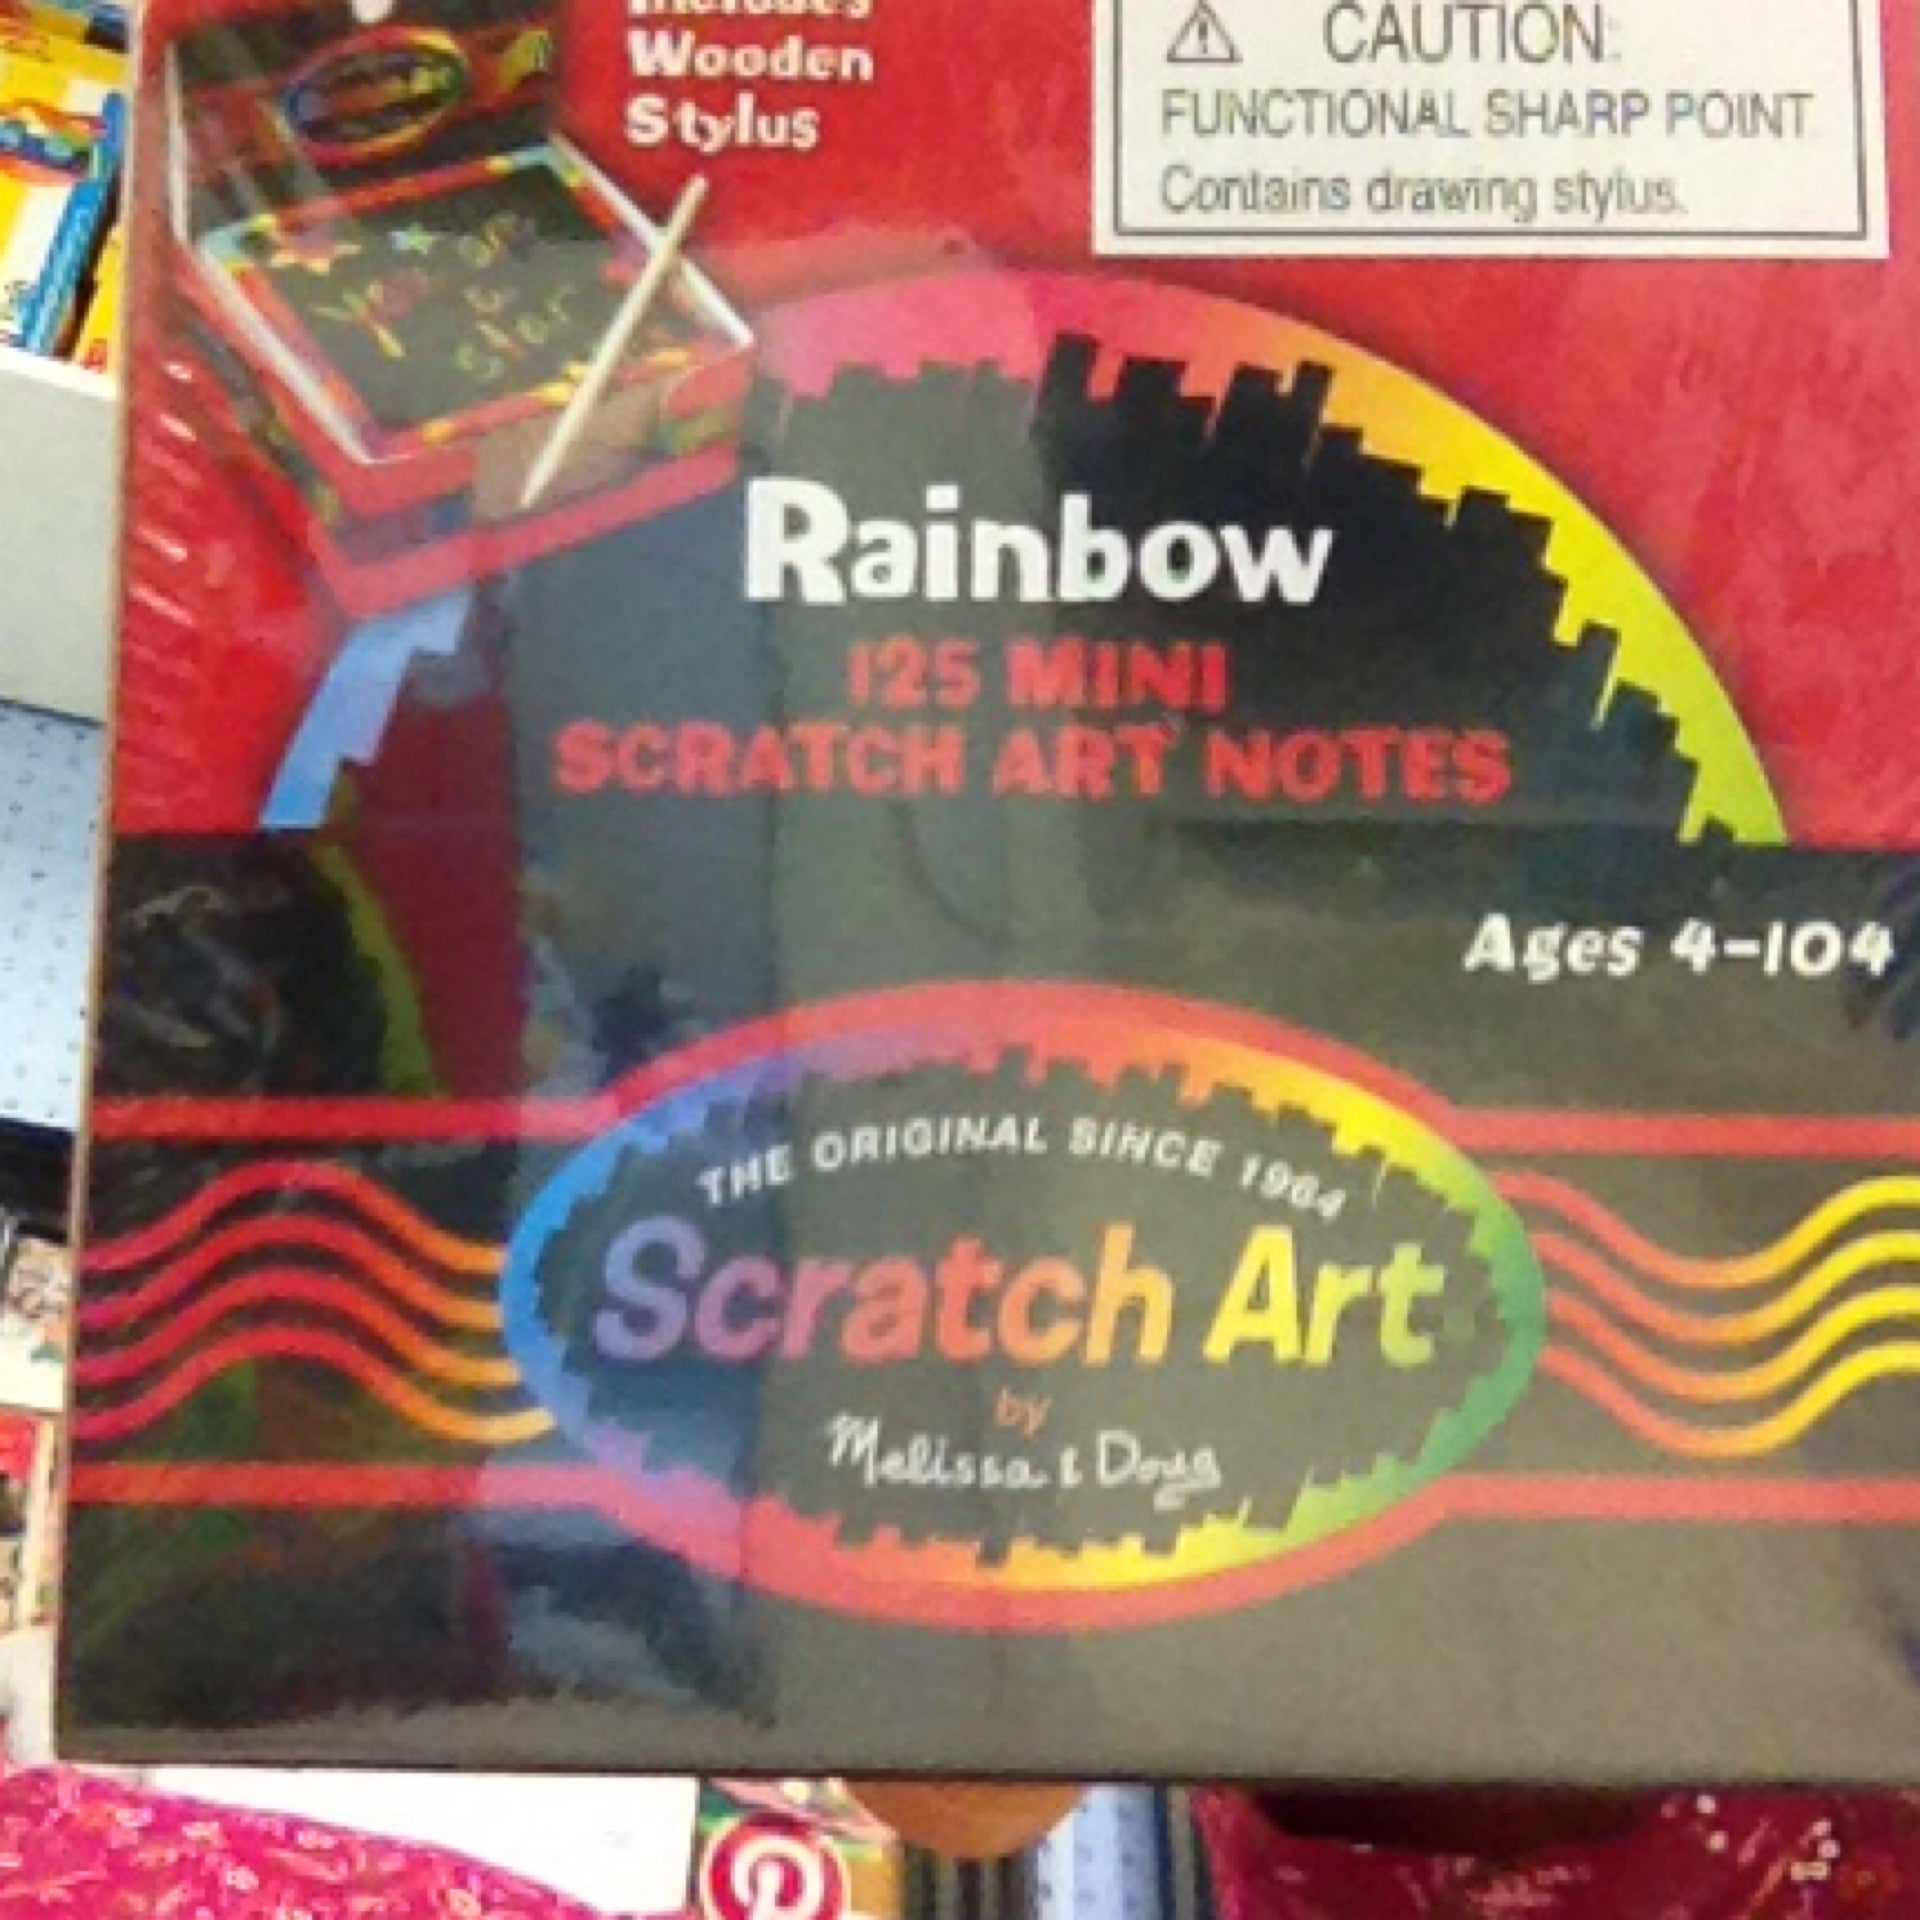 Melissa & Doug Scratch Art Notes, Rainbow